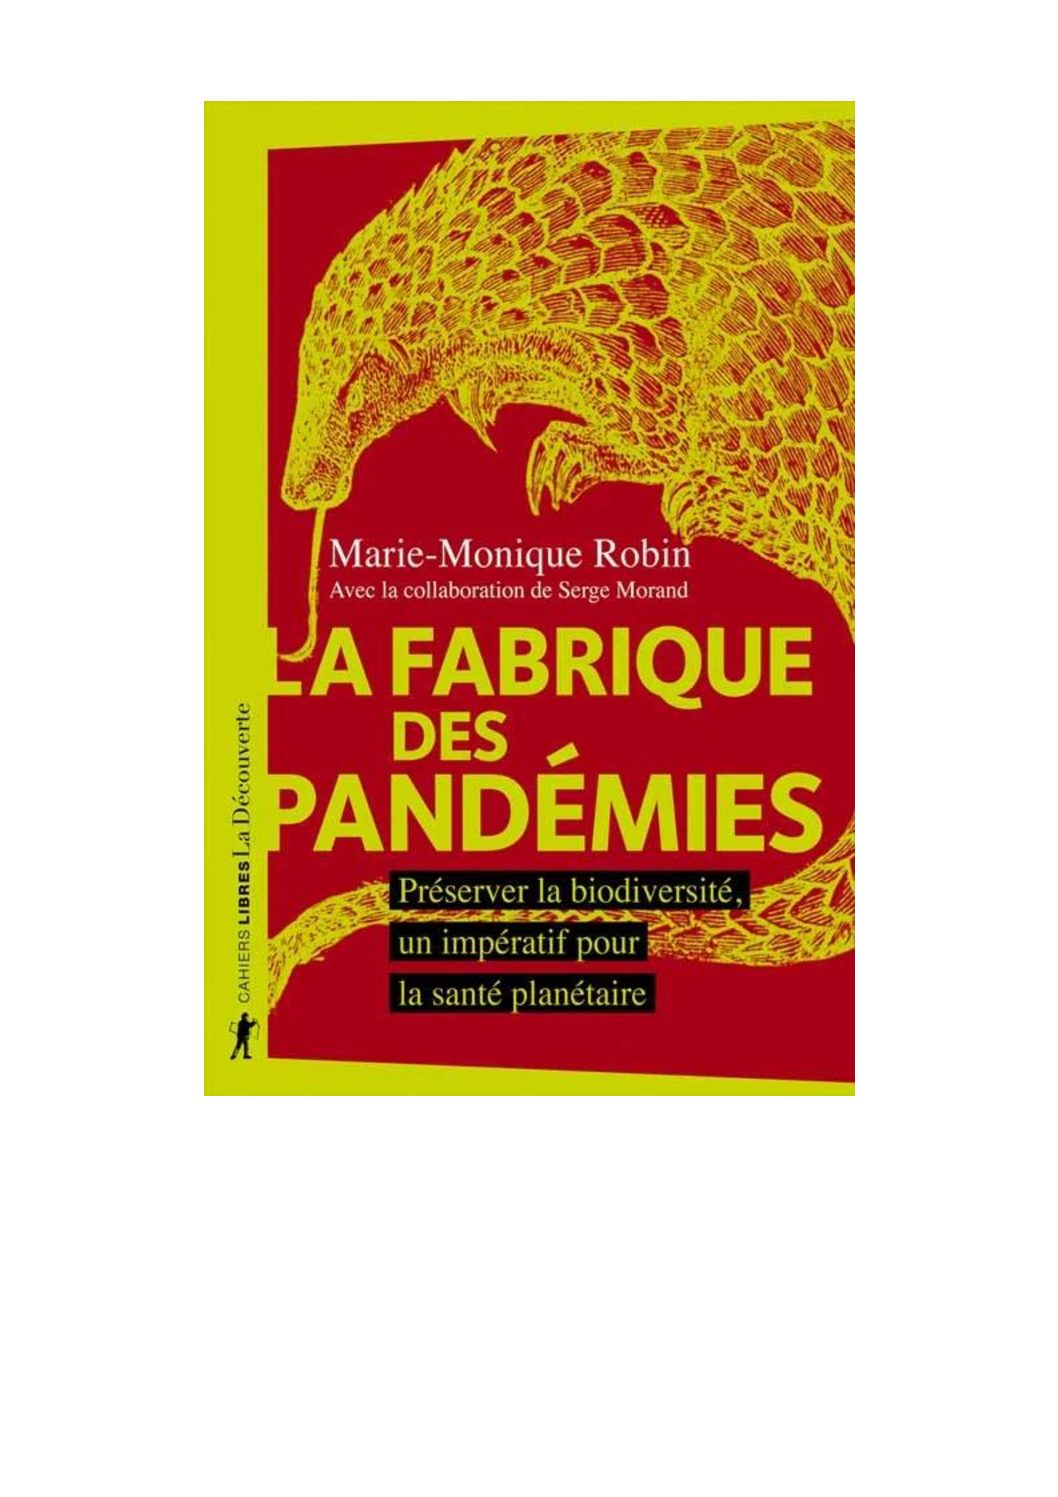 Environnement et Pandémies